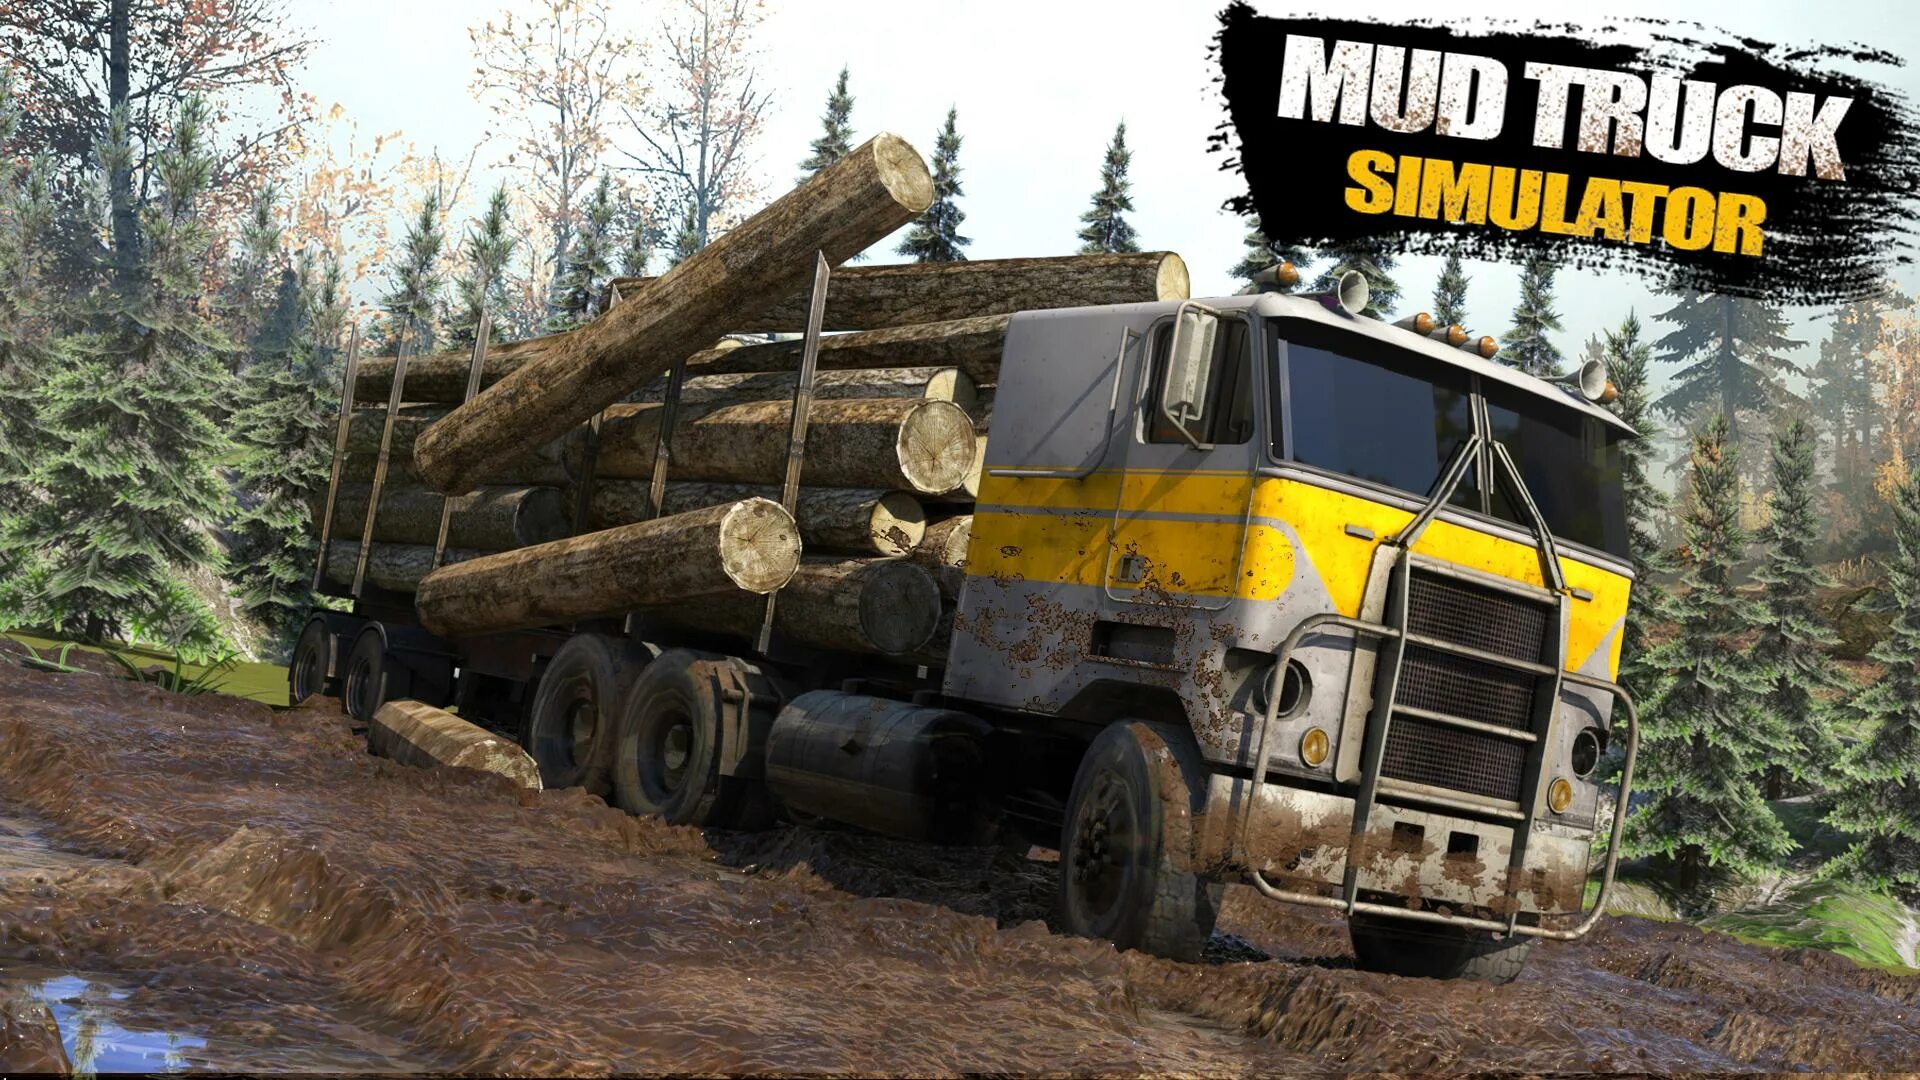 Игра ездить на грузовиках. Трак симулятор оффроад. Truck Simulator Offroad 2. Игра про Грузовики по бездорожью. Игра про бездорожье на грузовиках.